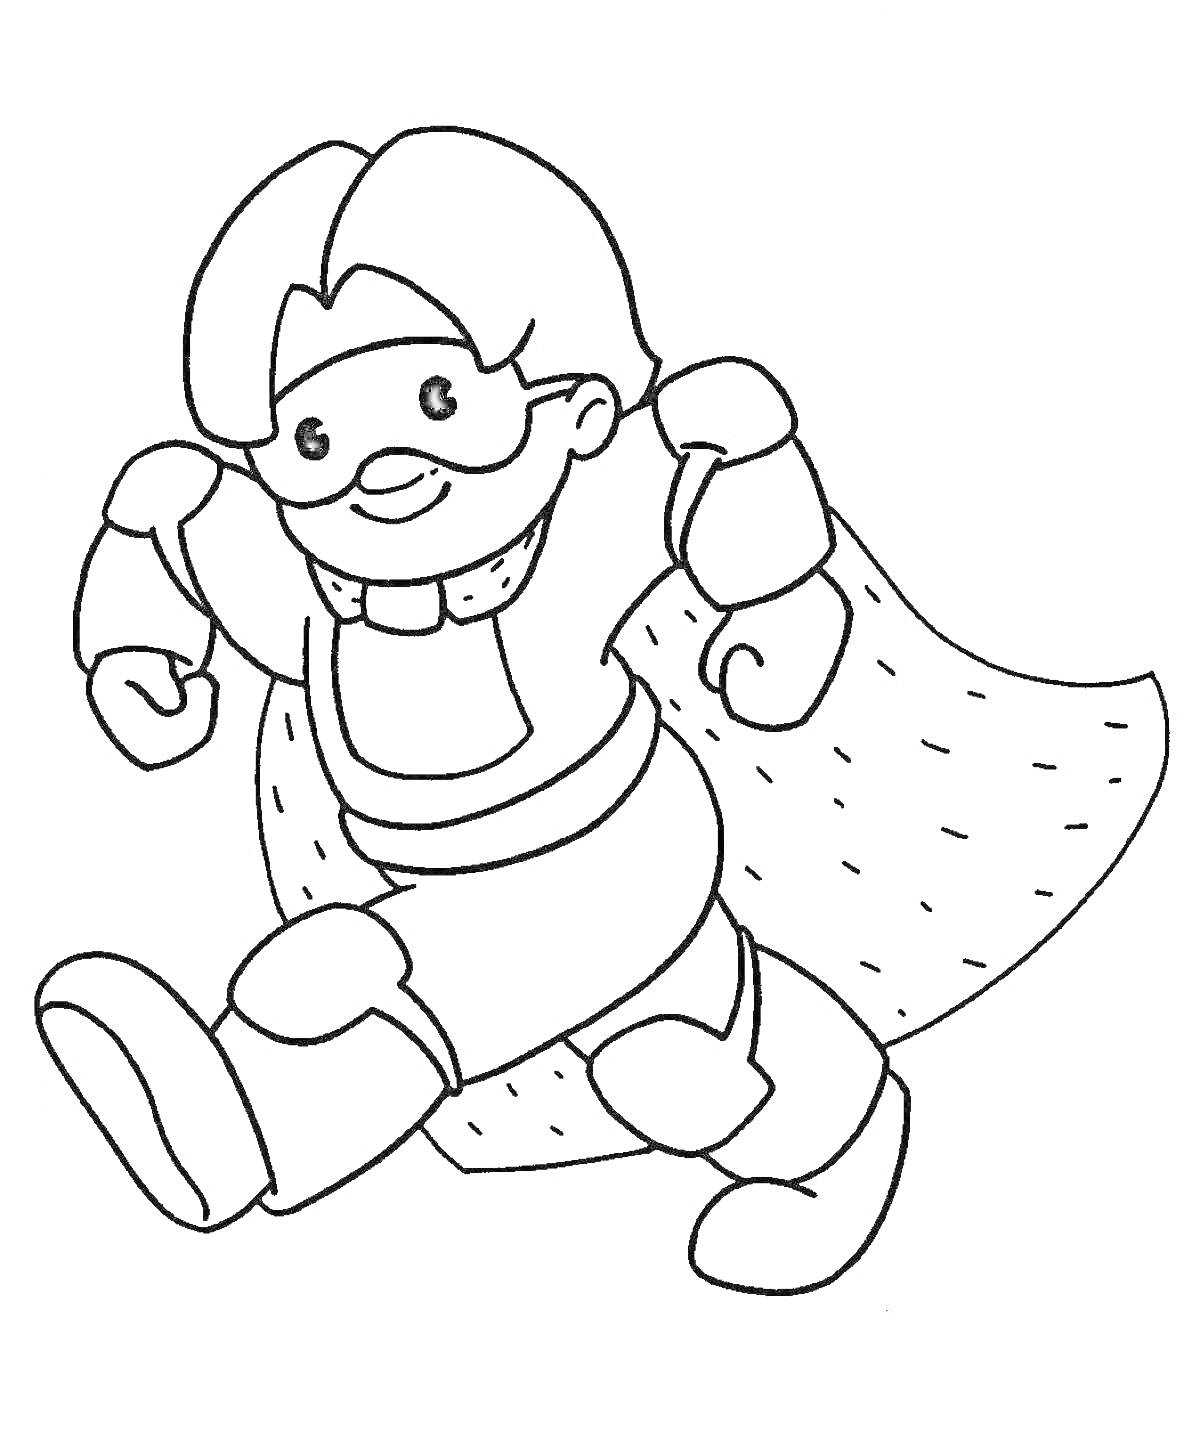 Раскраска мальчик в новогоднем костюме супергероя с плащом, очками и ремнем